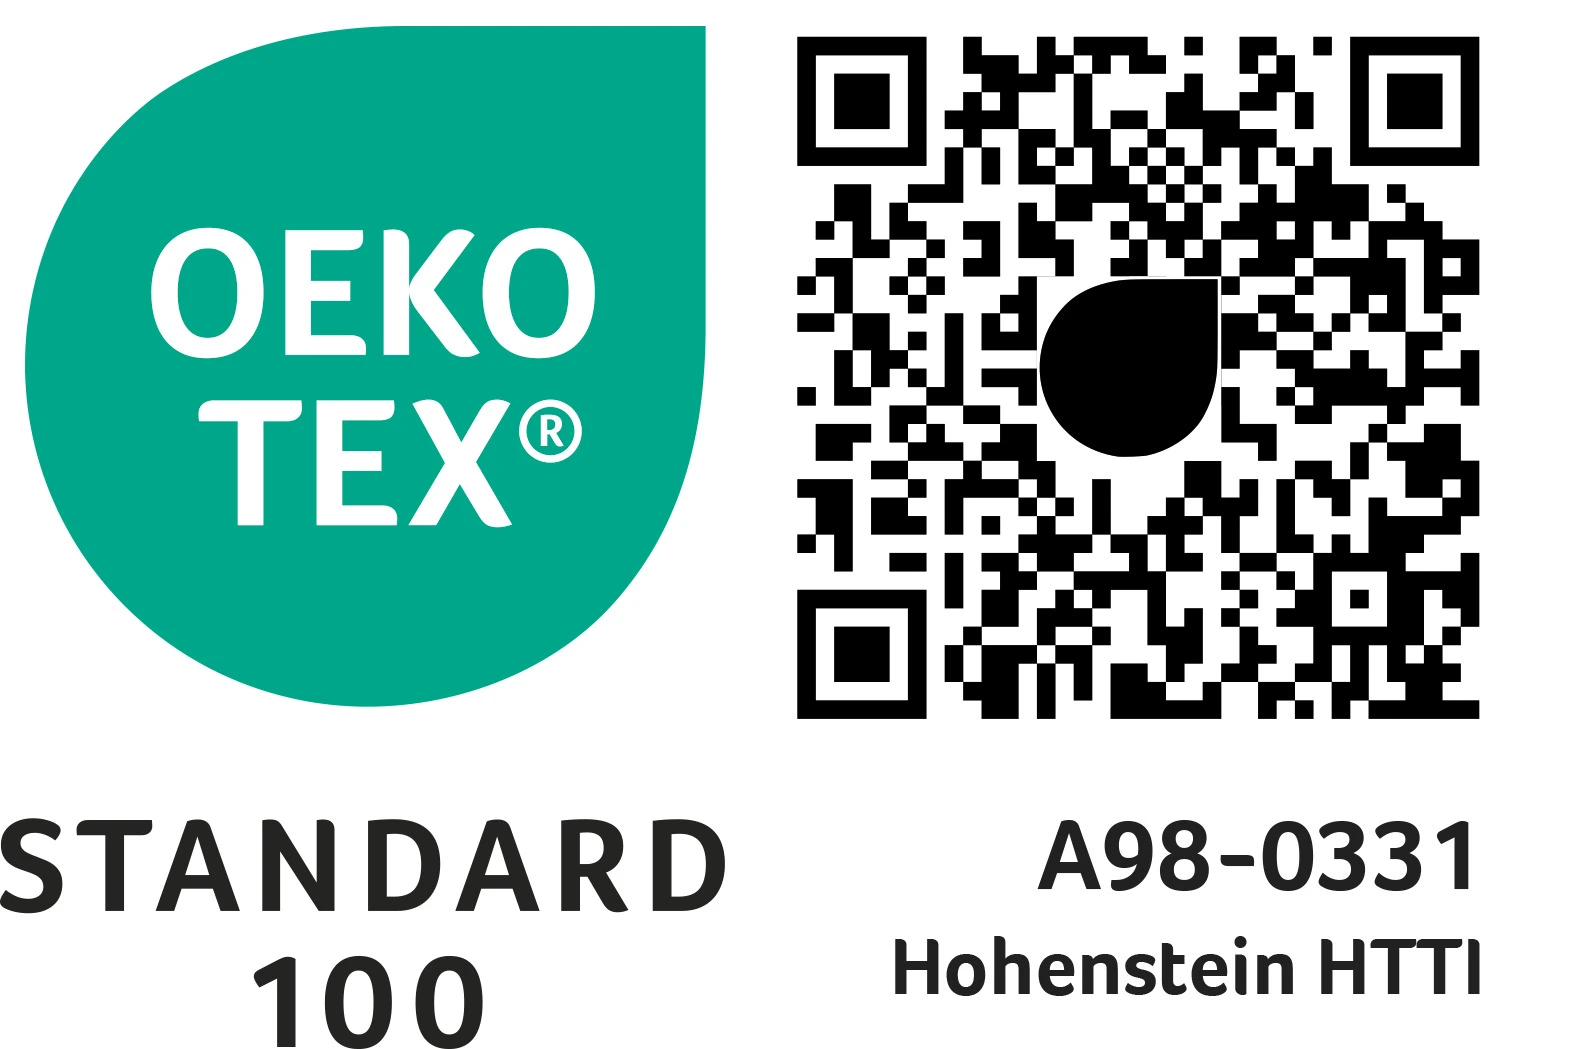 geprüft nach Standard 100 by Oeko-Tex®, bezieht sich selbstverständlich auch auf die Kissenfüllung